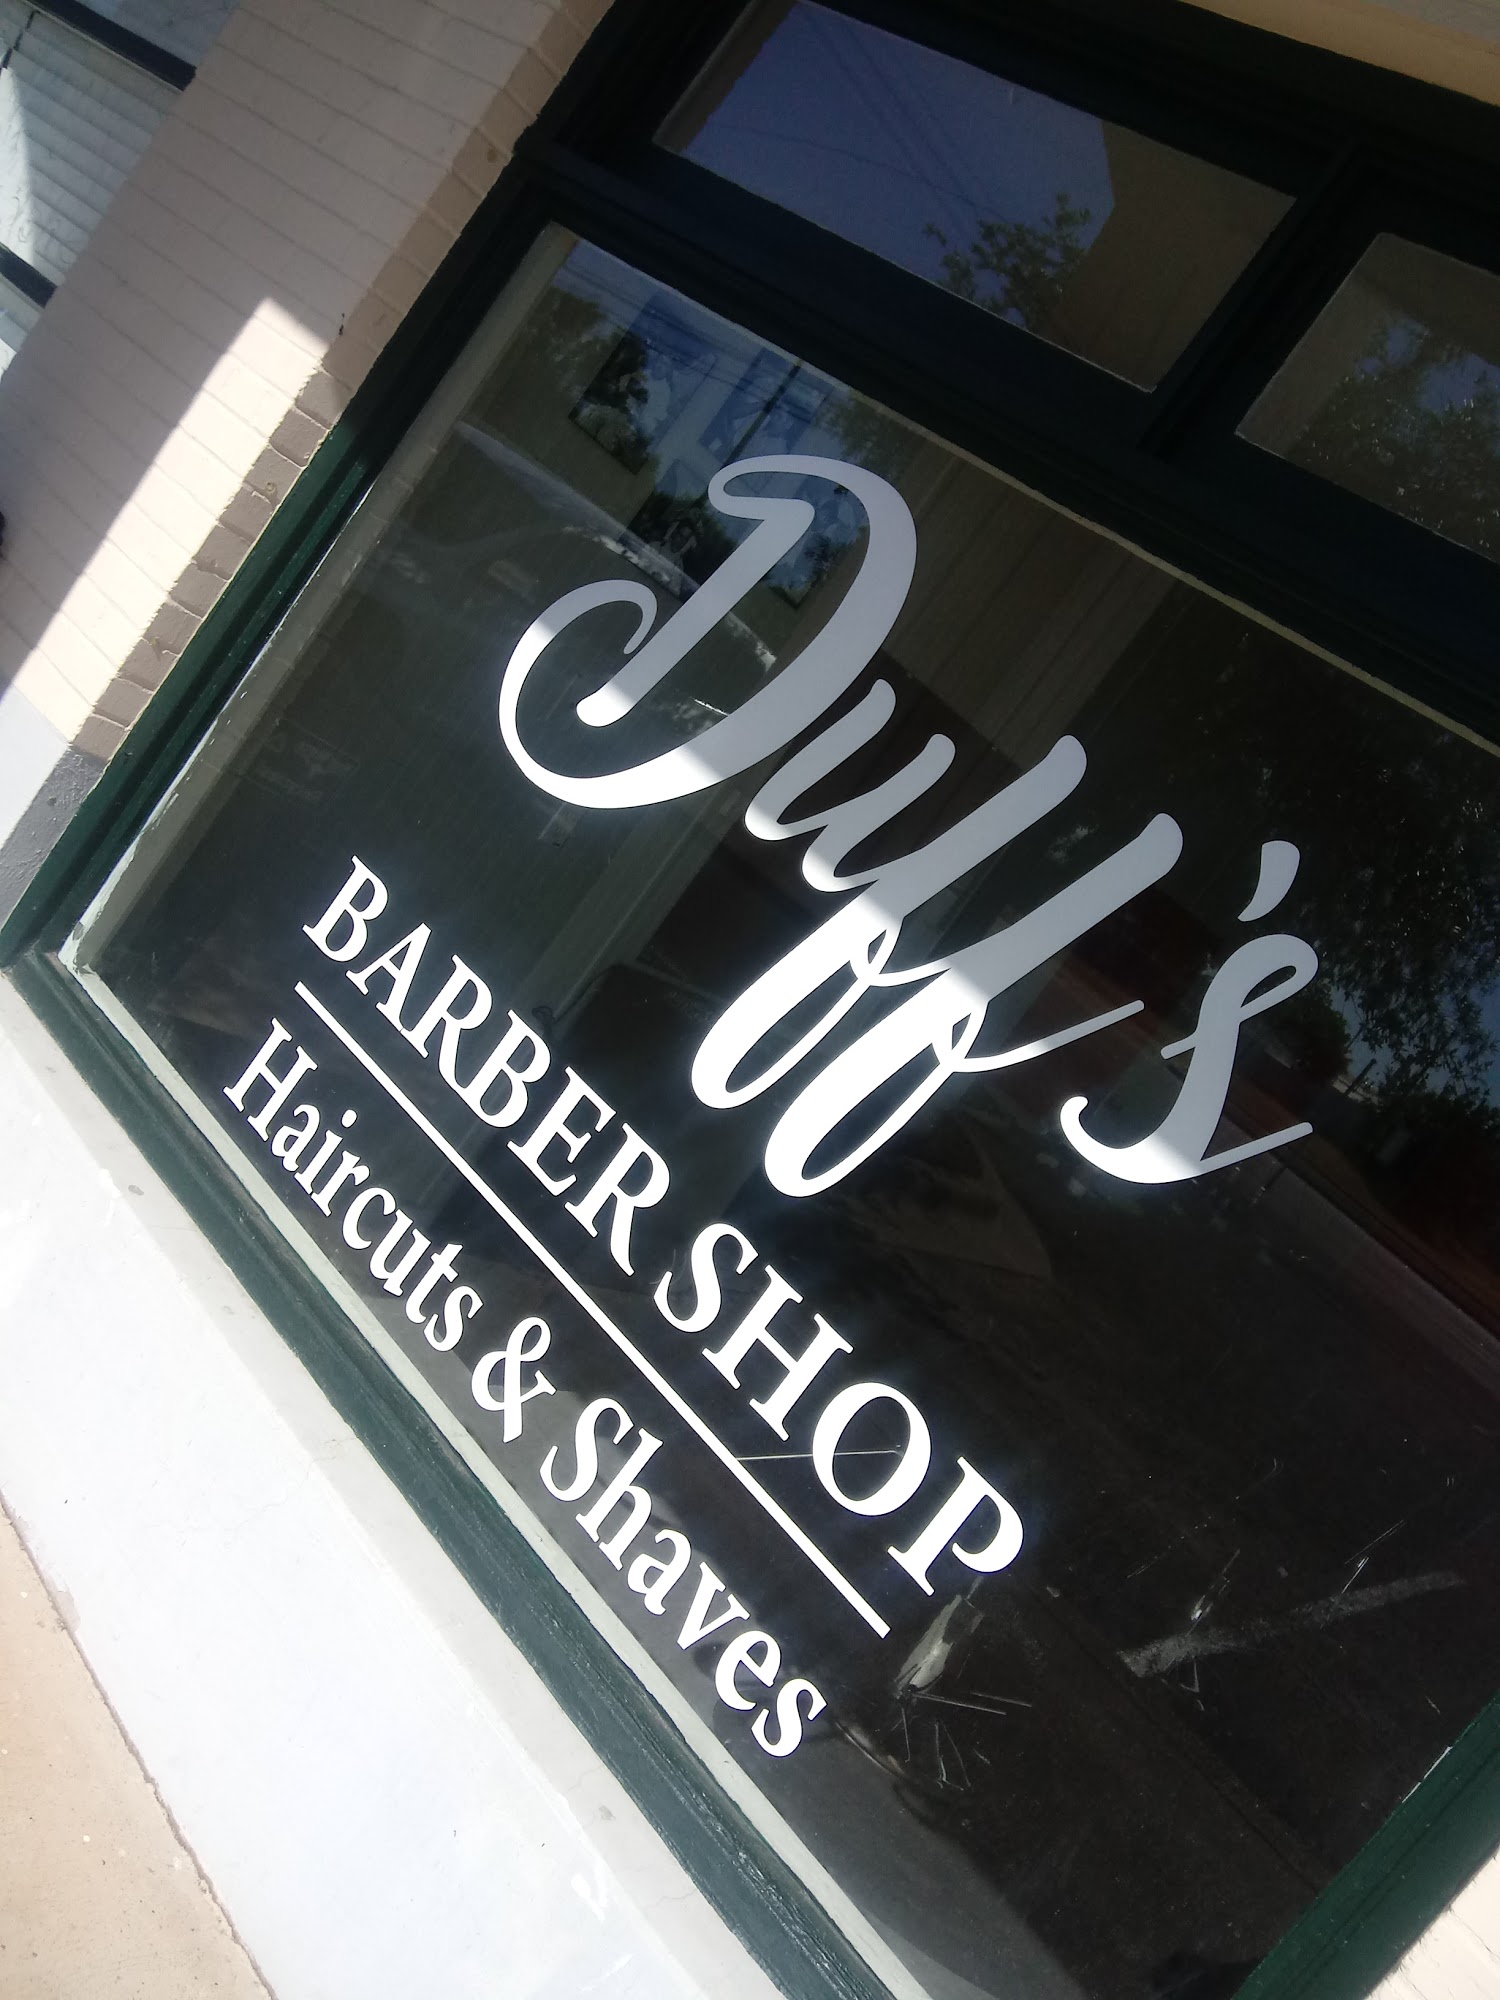 Duff's Barber Shop